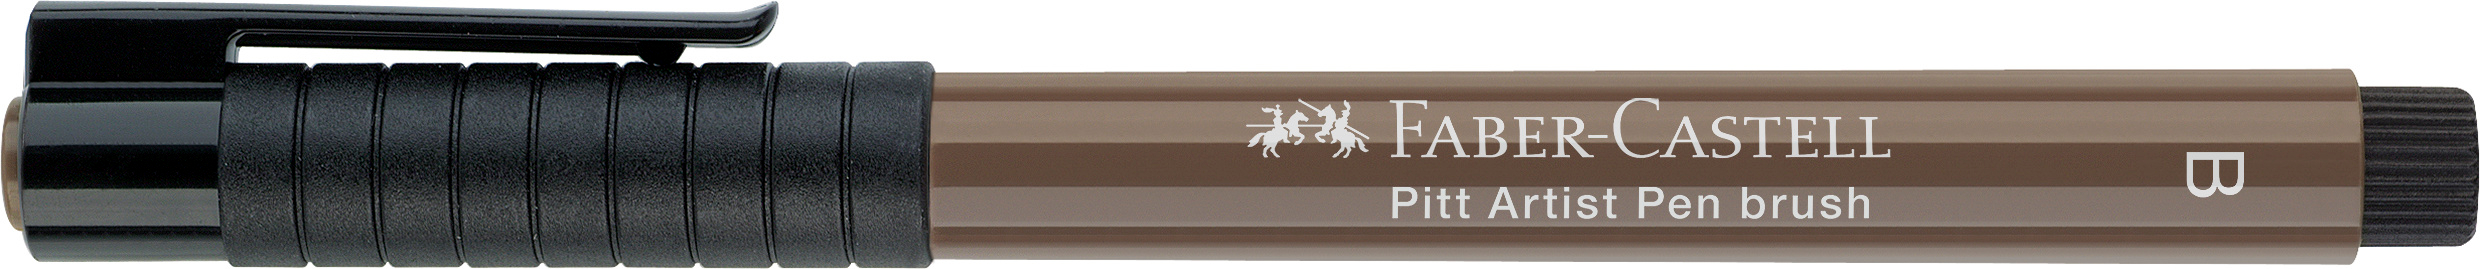 FABER-CASTELL Pitt Artist Pen Brush 2.5mm 167477 walnut brown